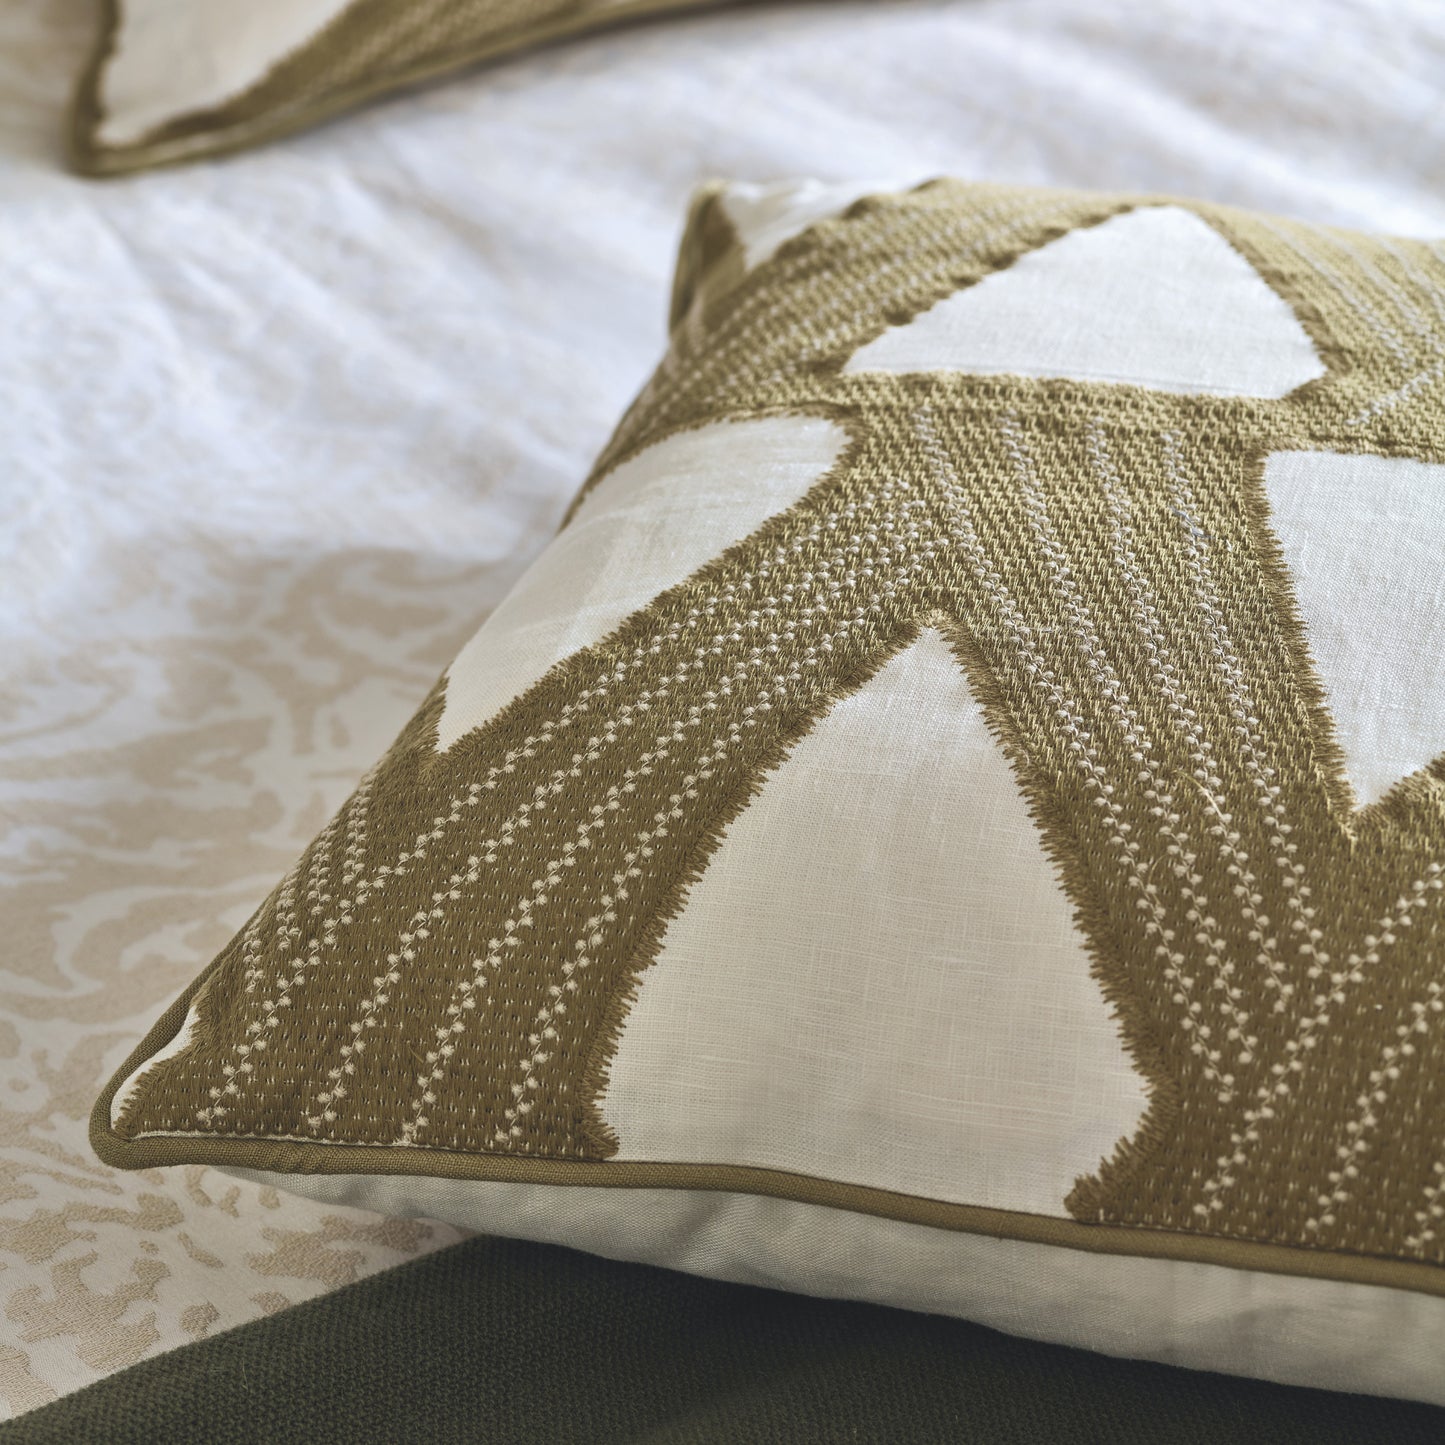 Zoffany Kanoko Decorative Pillow